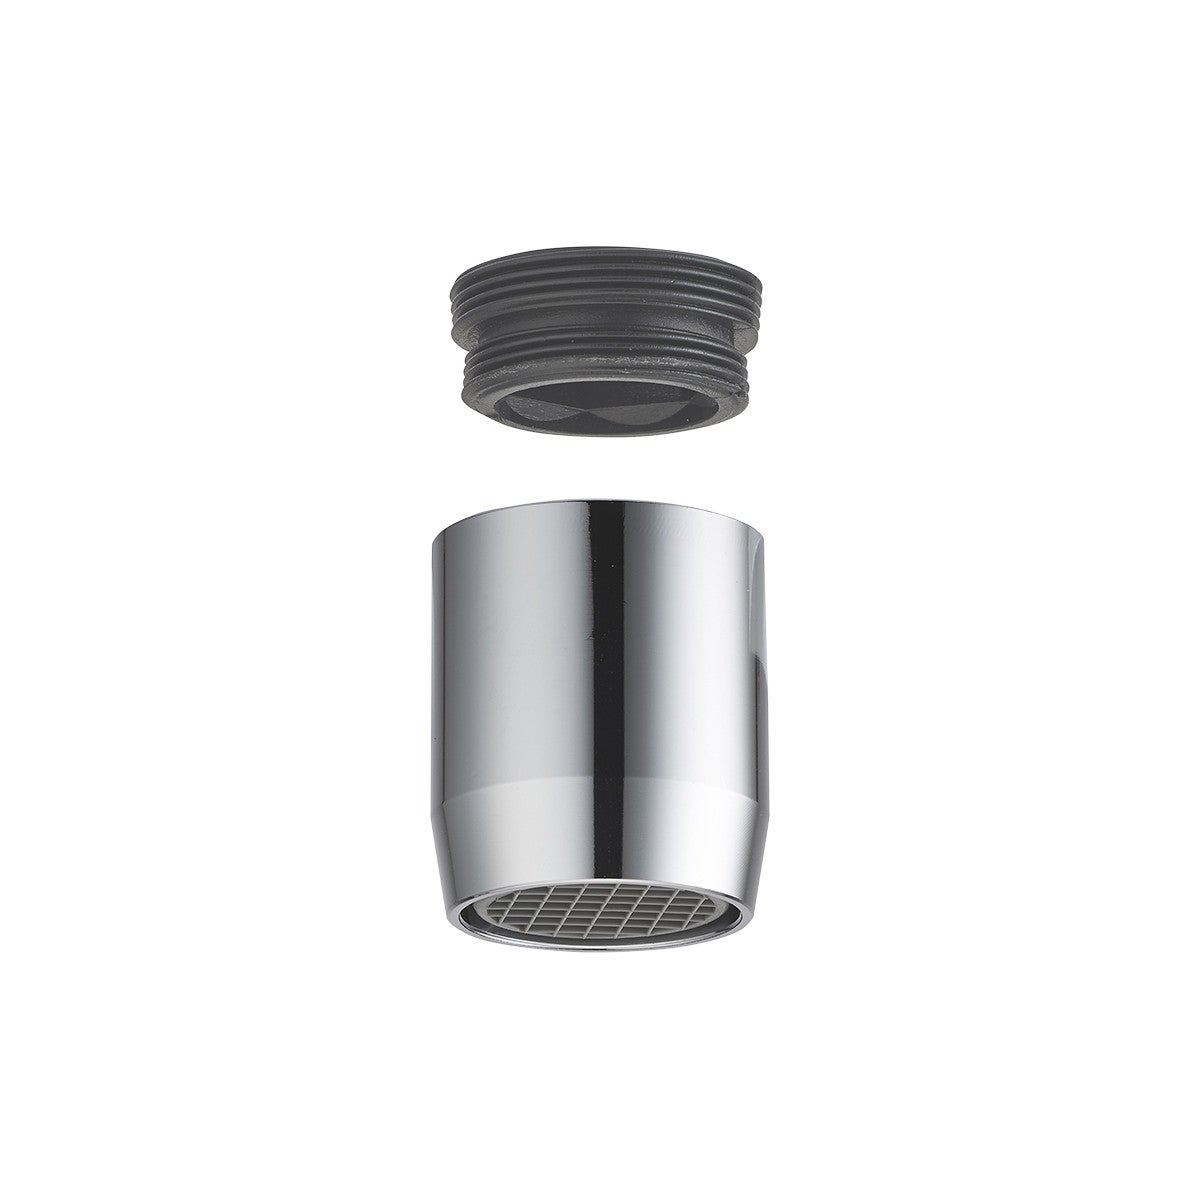 N°1 Filtre Calcaire Robinet Cuisine- filtre robinet calcaire Anti calcaire  magnétique pour robinet